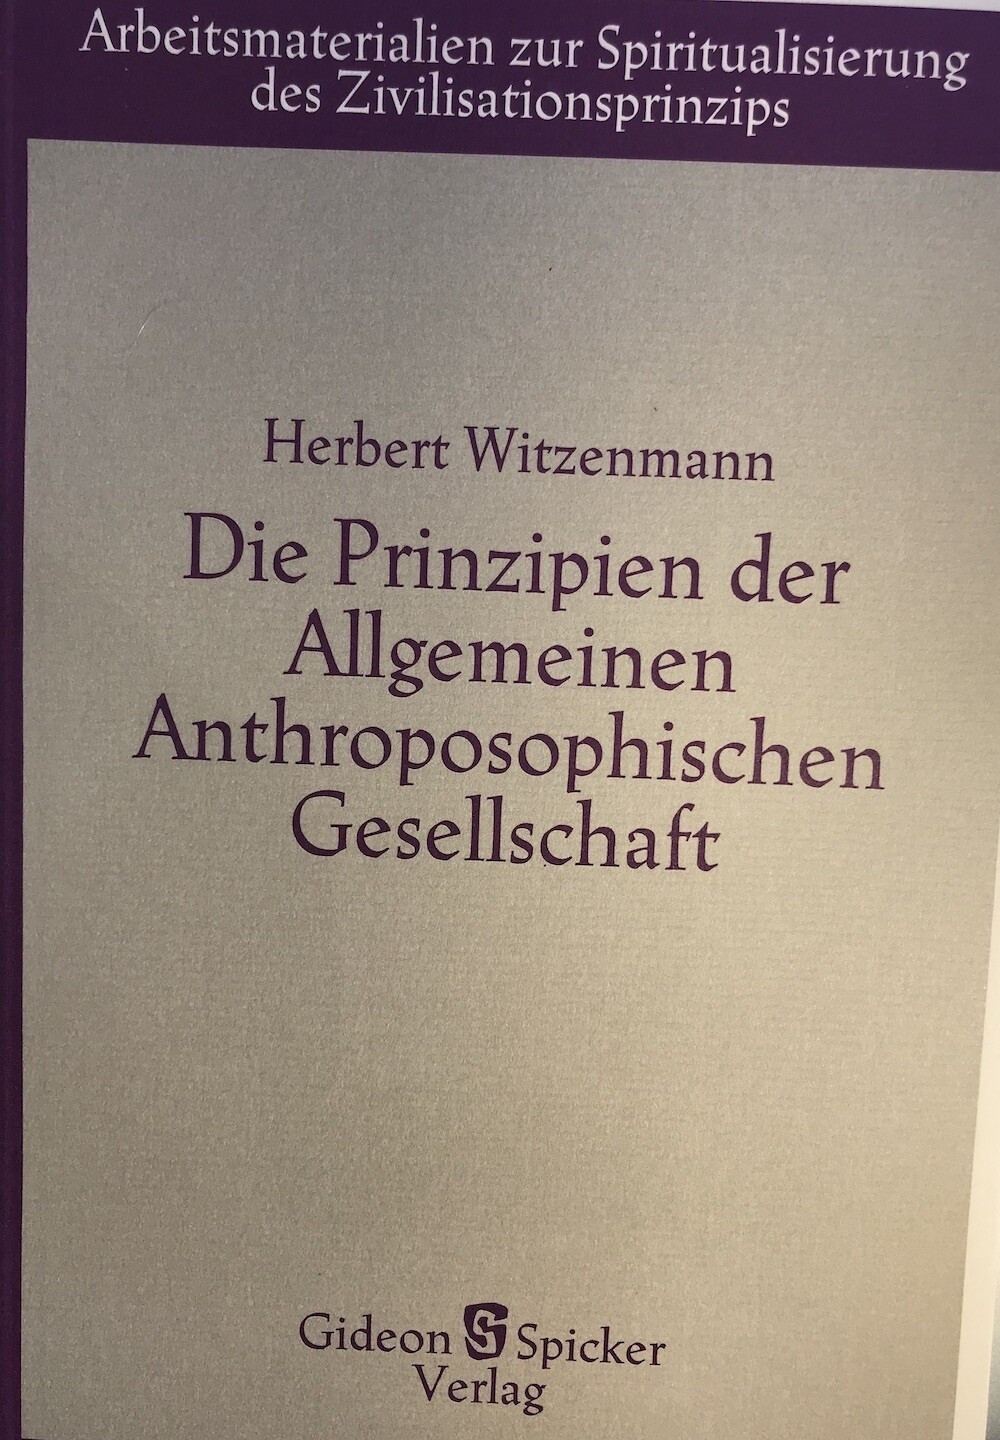 Herbert Witzenmann: Die Prinzipien der Allgemeinen Anthroposophischen Gesellschaft (1981)